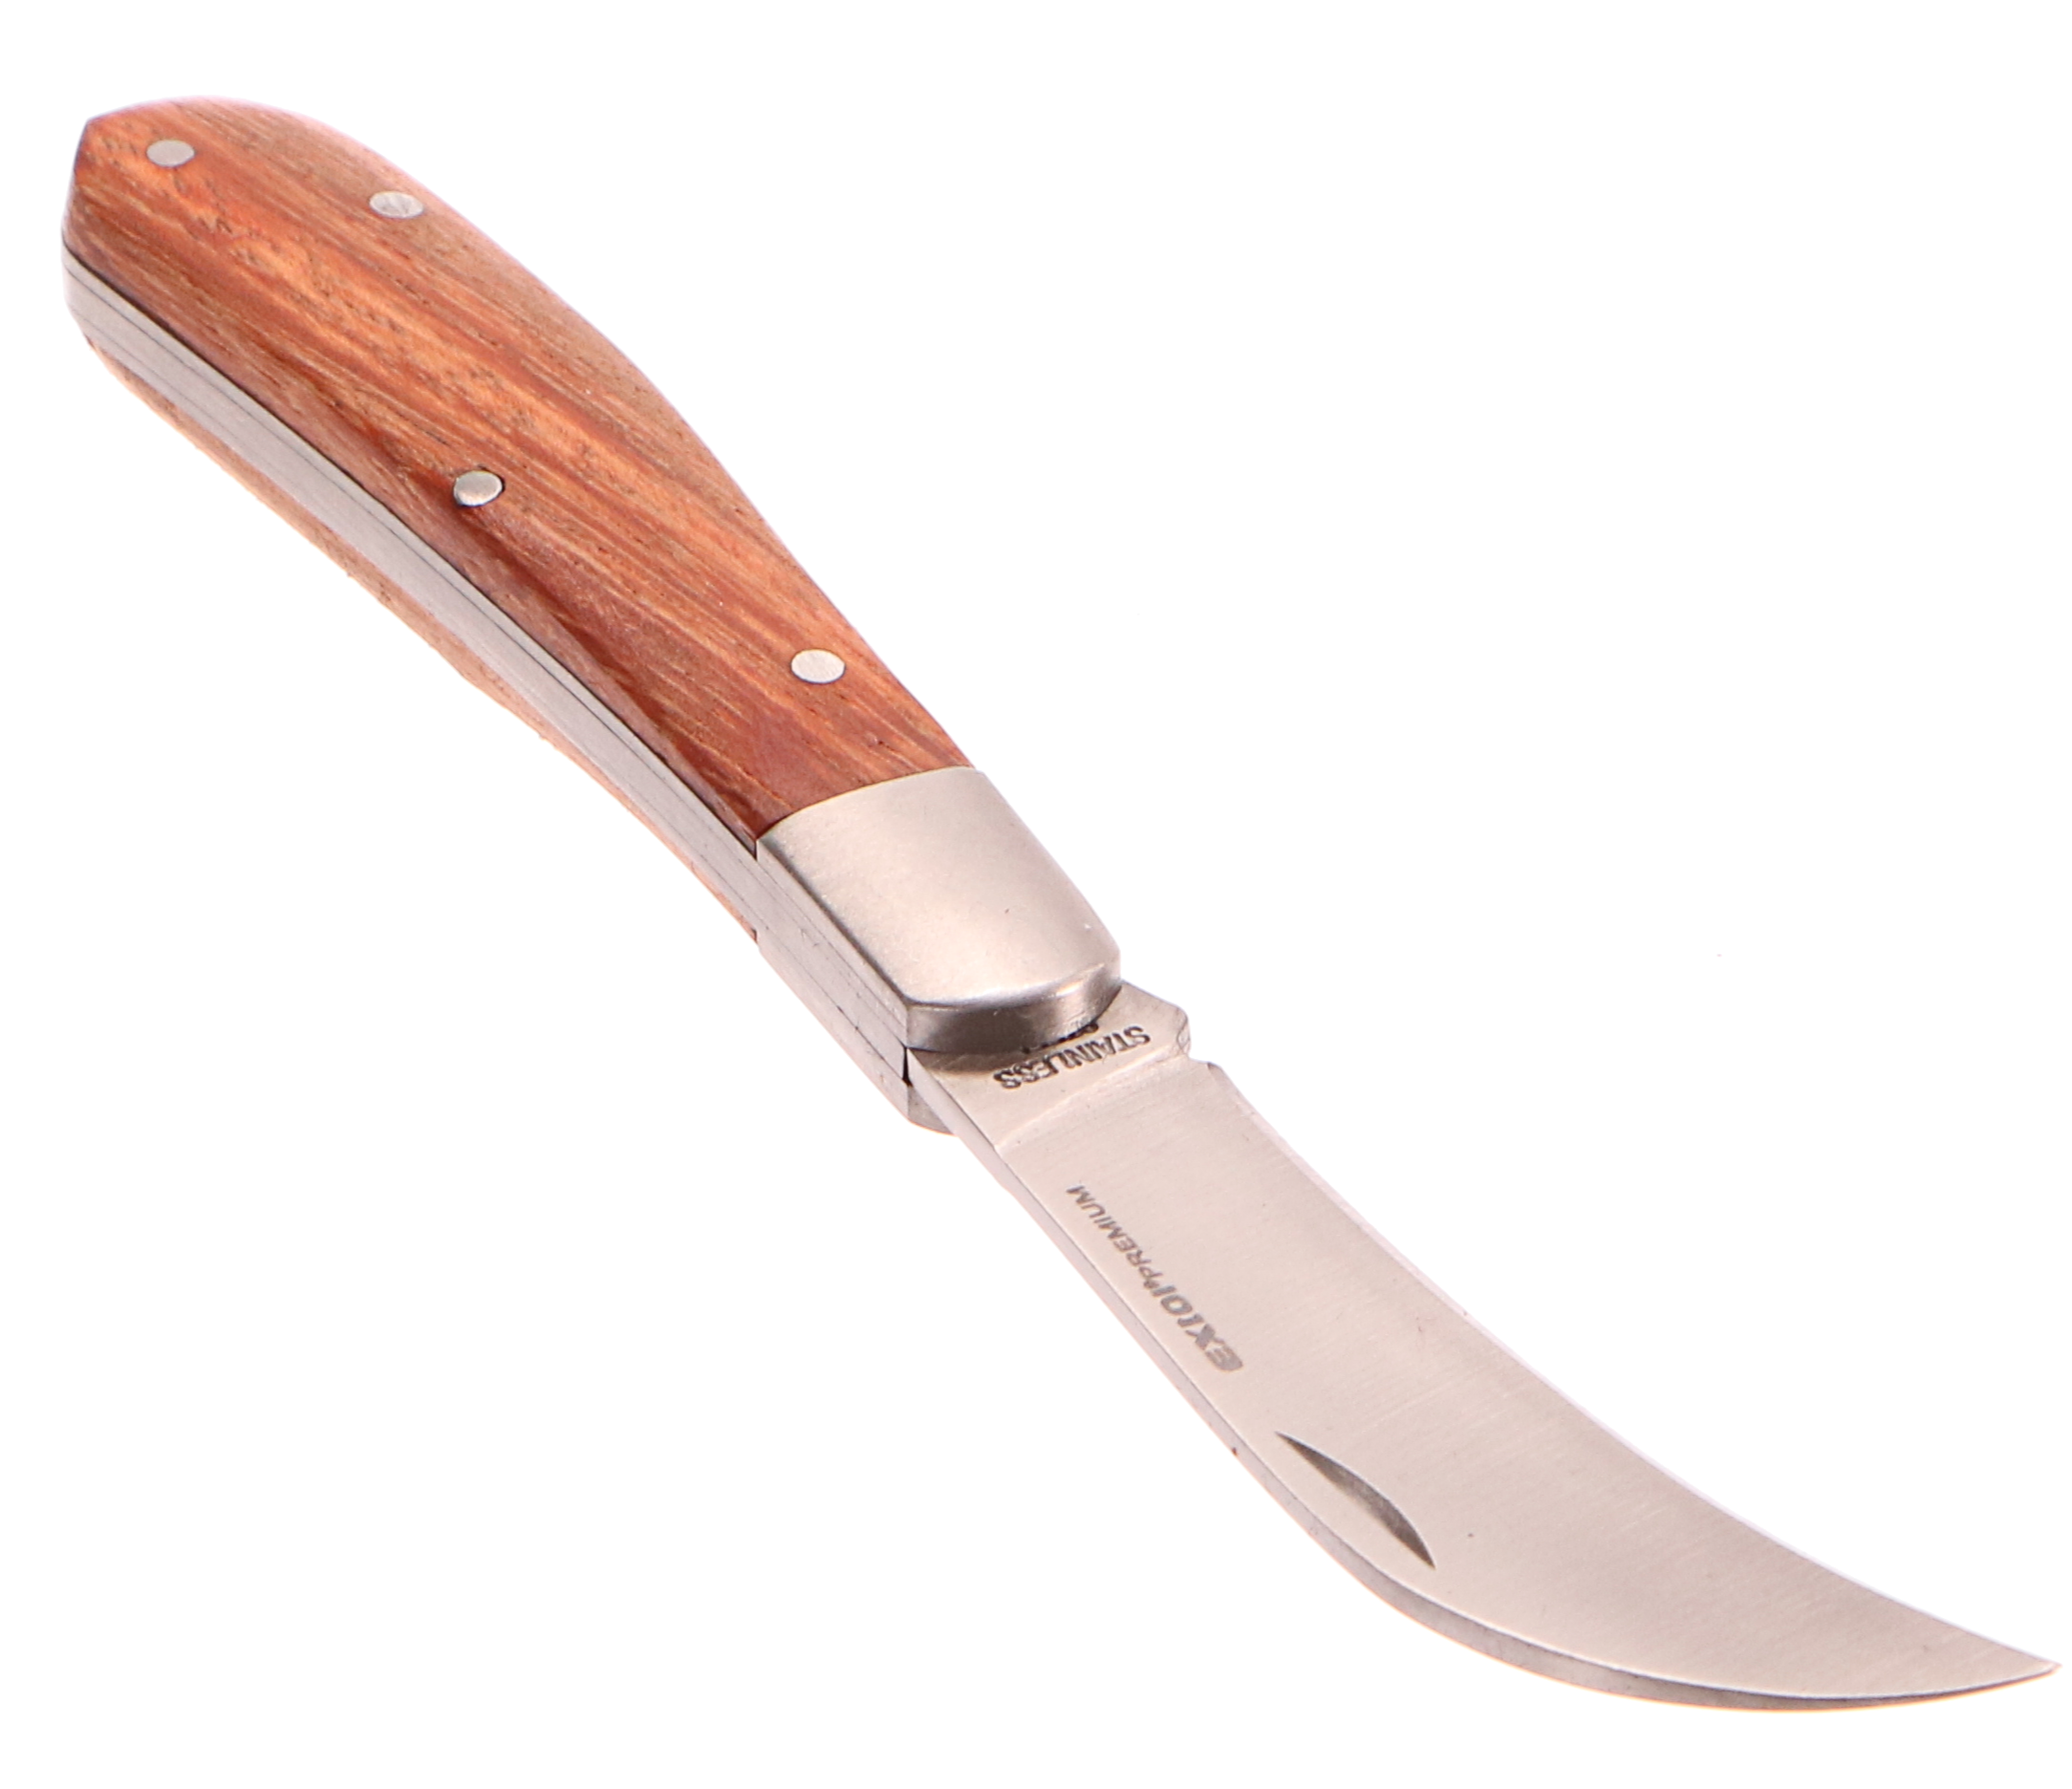 Nůž štěpařský zavírací nerez 170/100mm délka otevřeného nože 170mm EXTOL PREMIUM